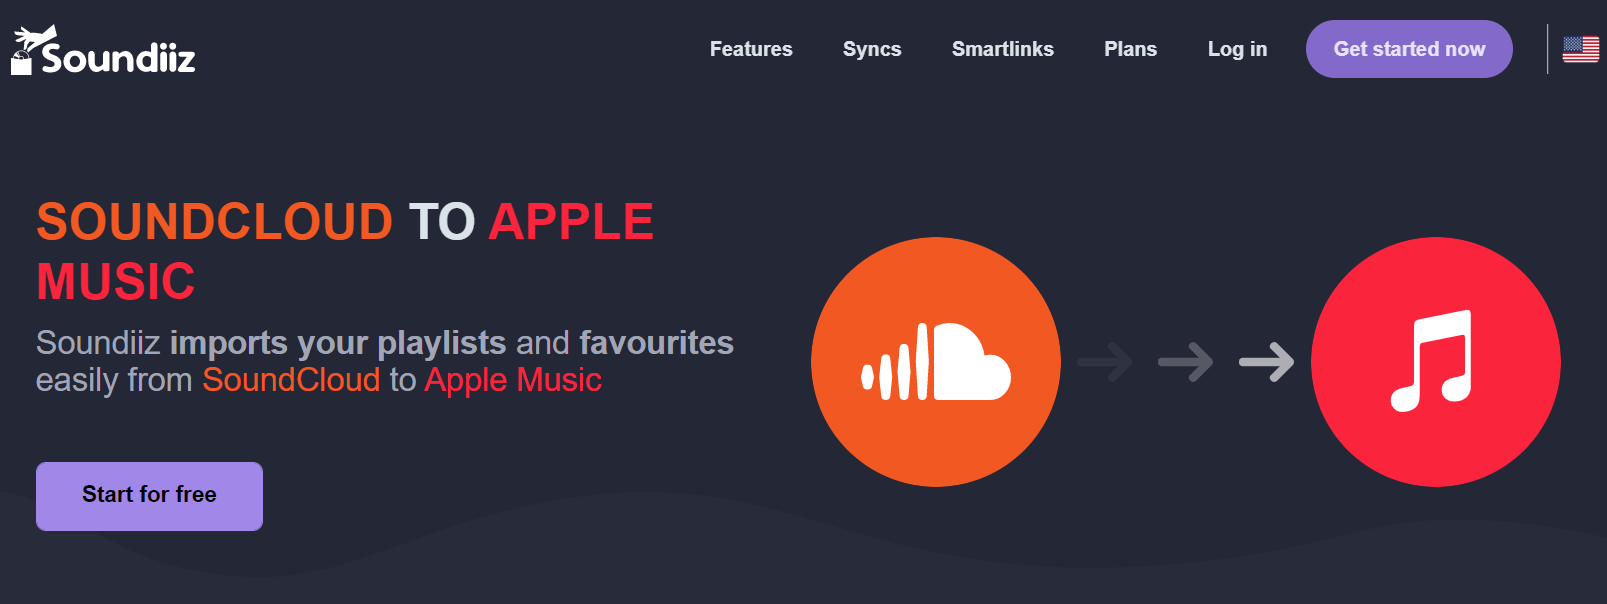 Soundiiz Soundcloud a la música de Apple